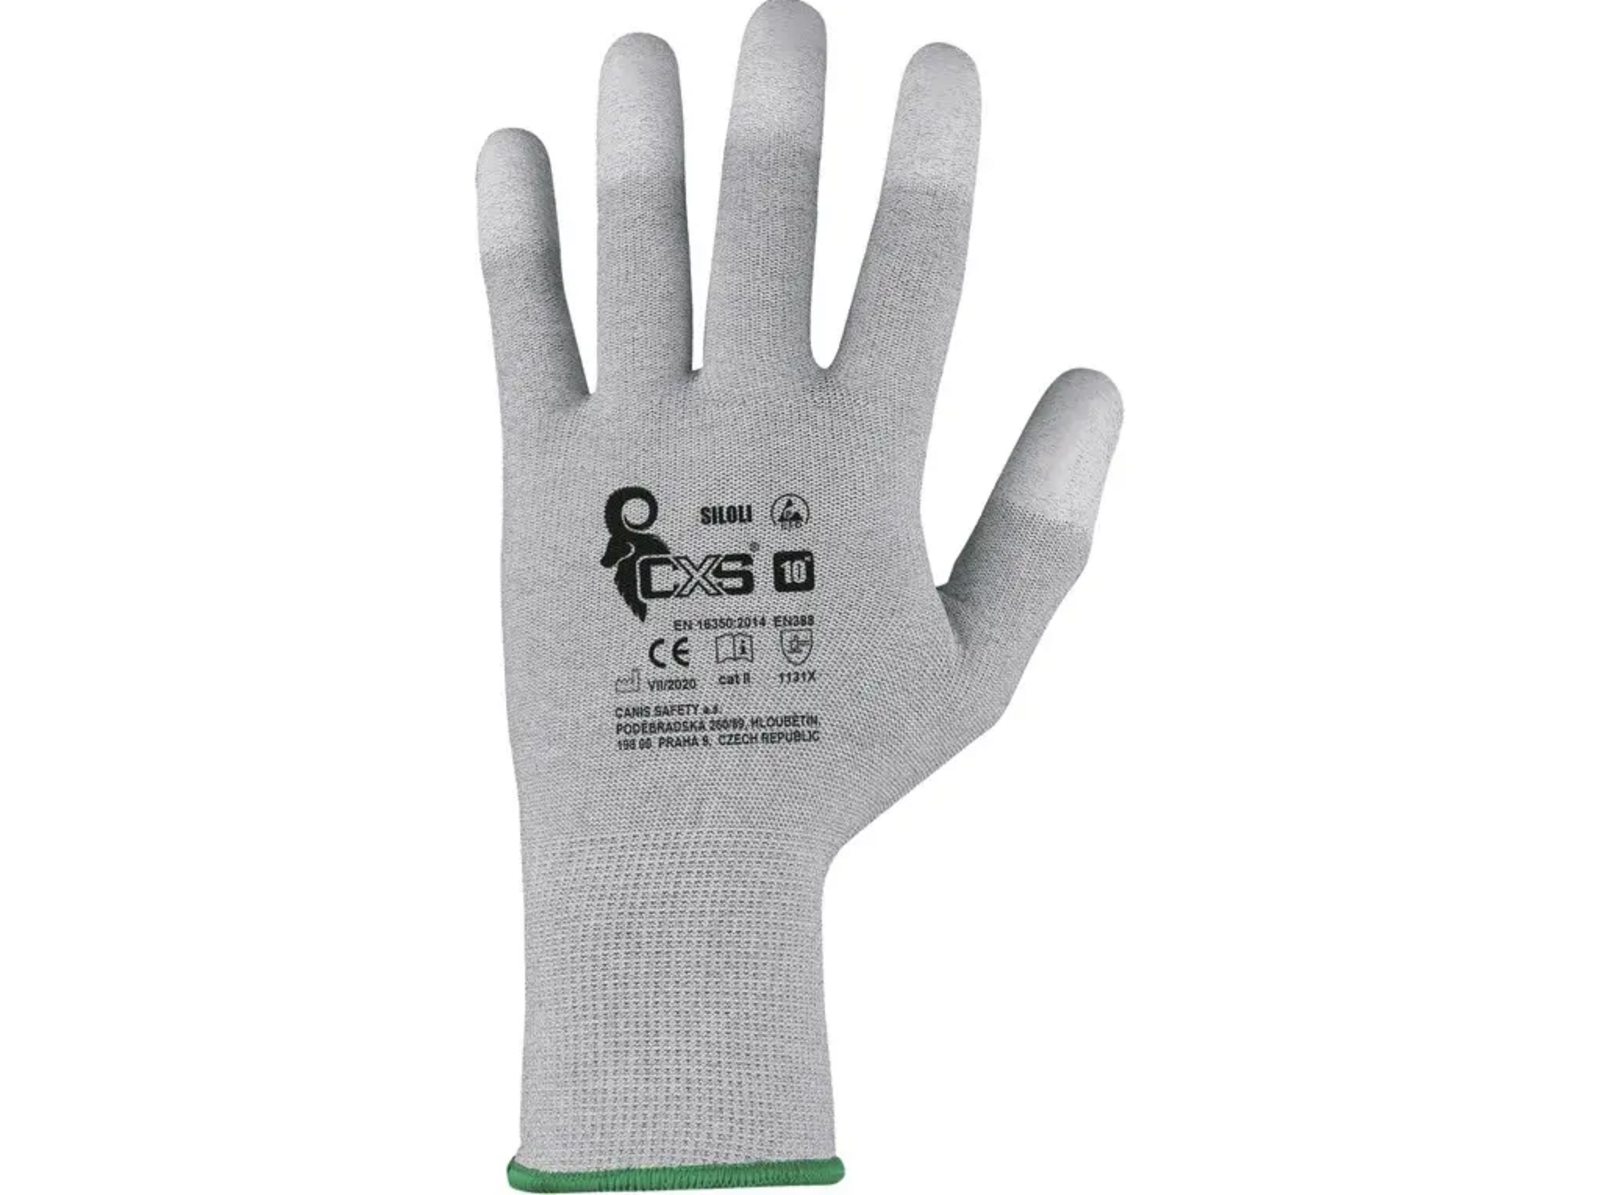 Povrstvené antistatické rukavice CXS Siloli - veľkosť: 8/M, farba: sivá